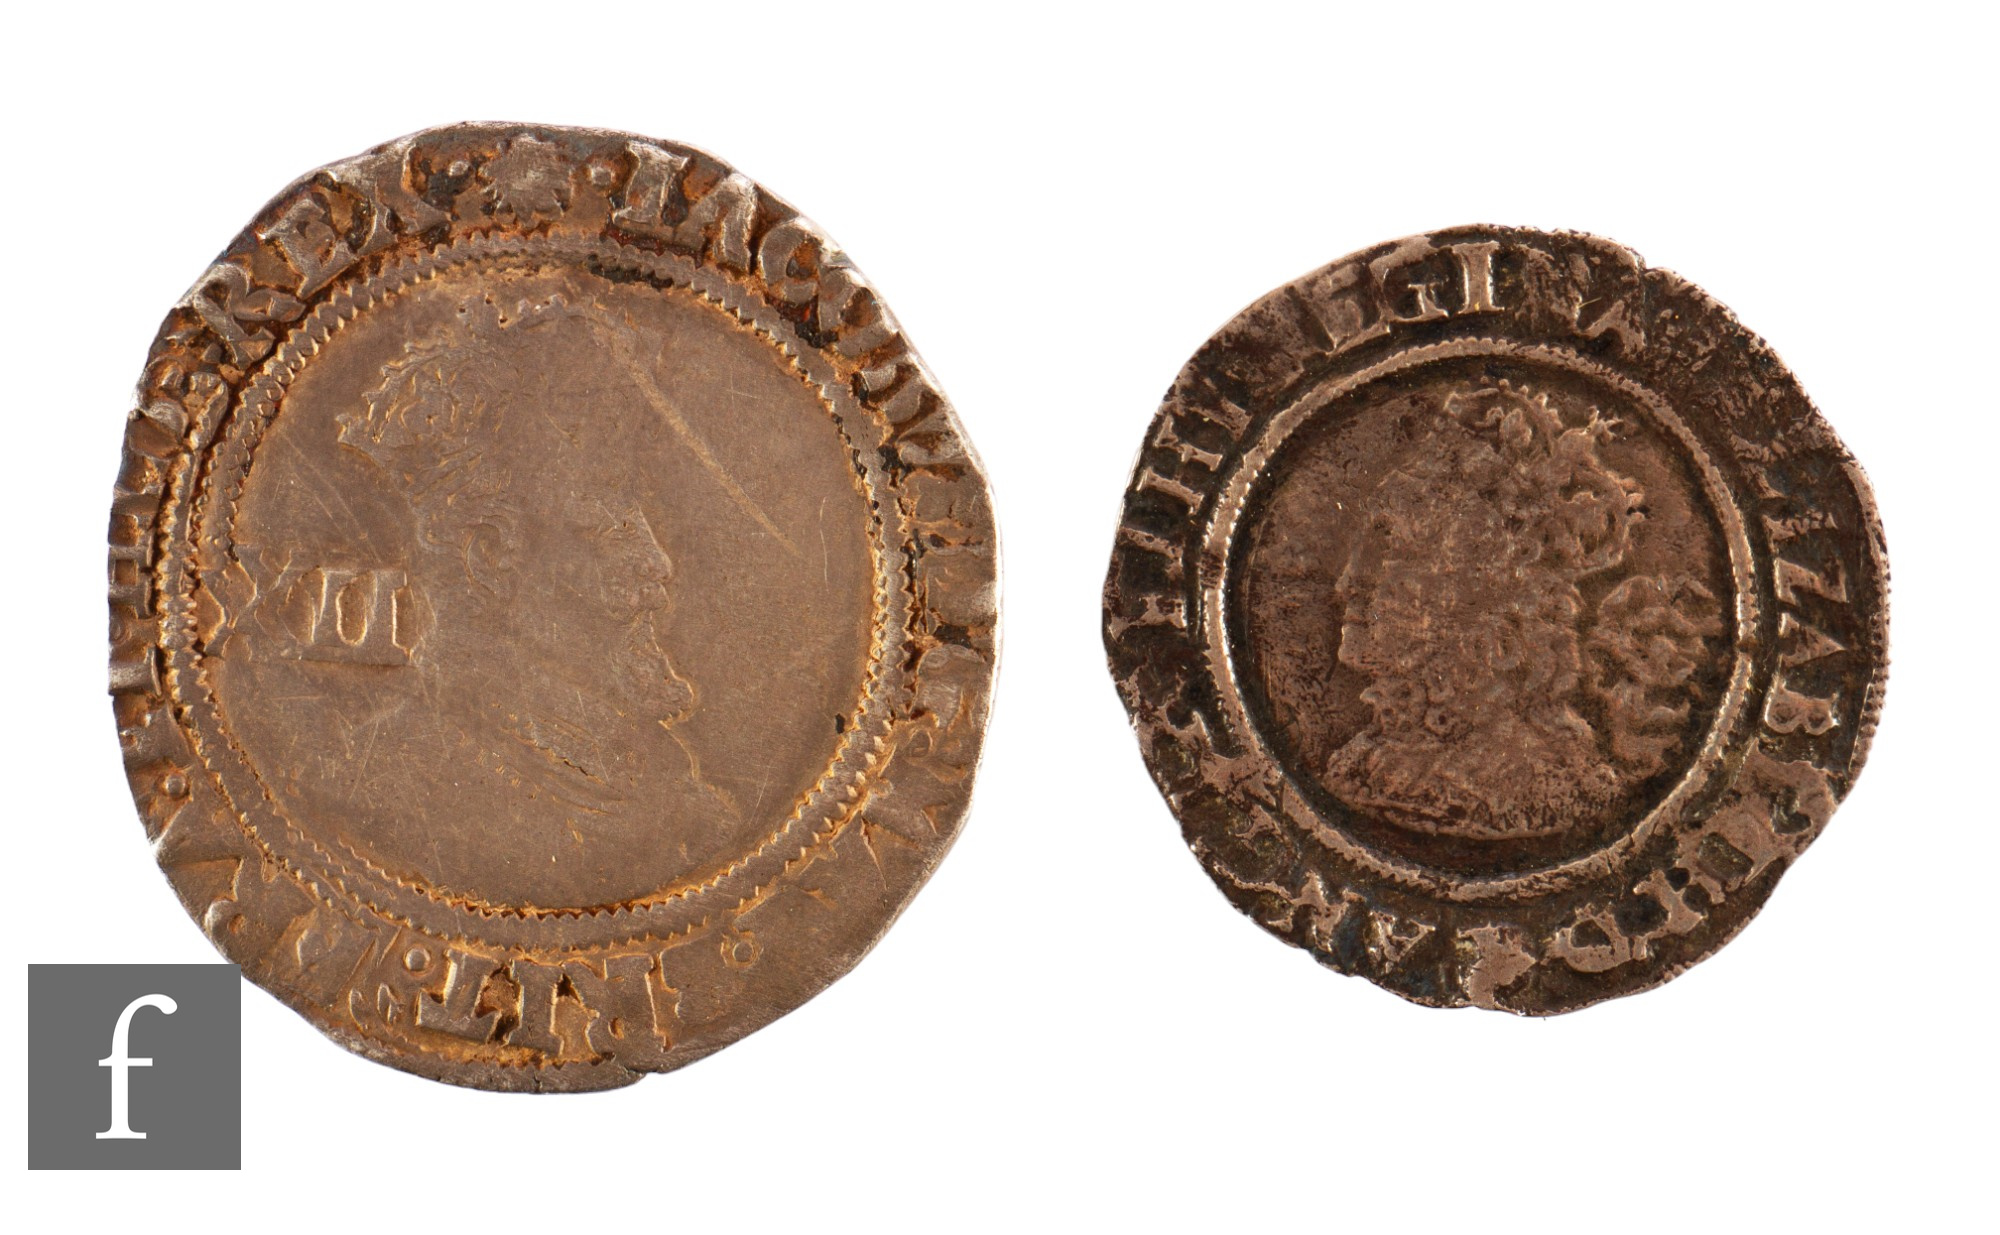 Elizabeth I to James I - An Elizabeth I 1566 sixpence and a James I shilling. (2)